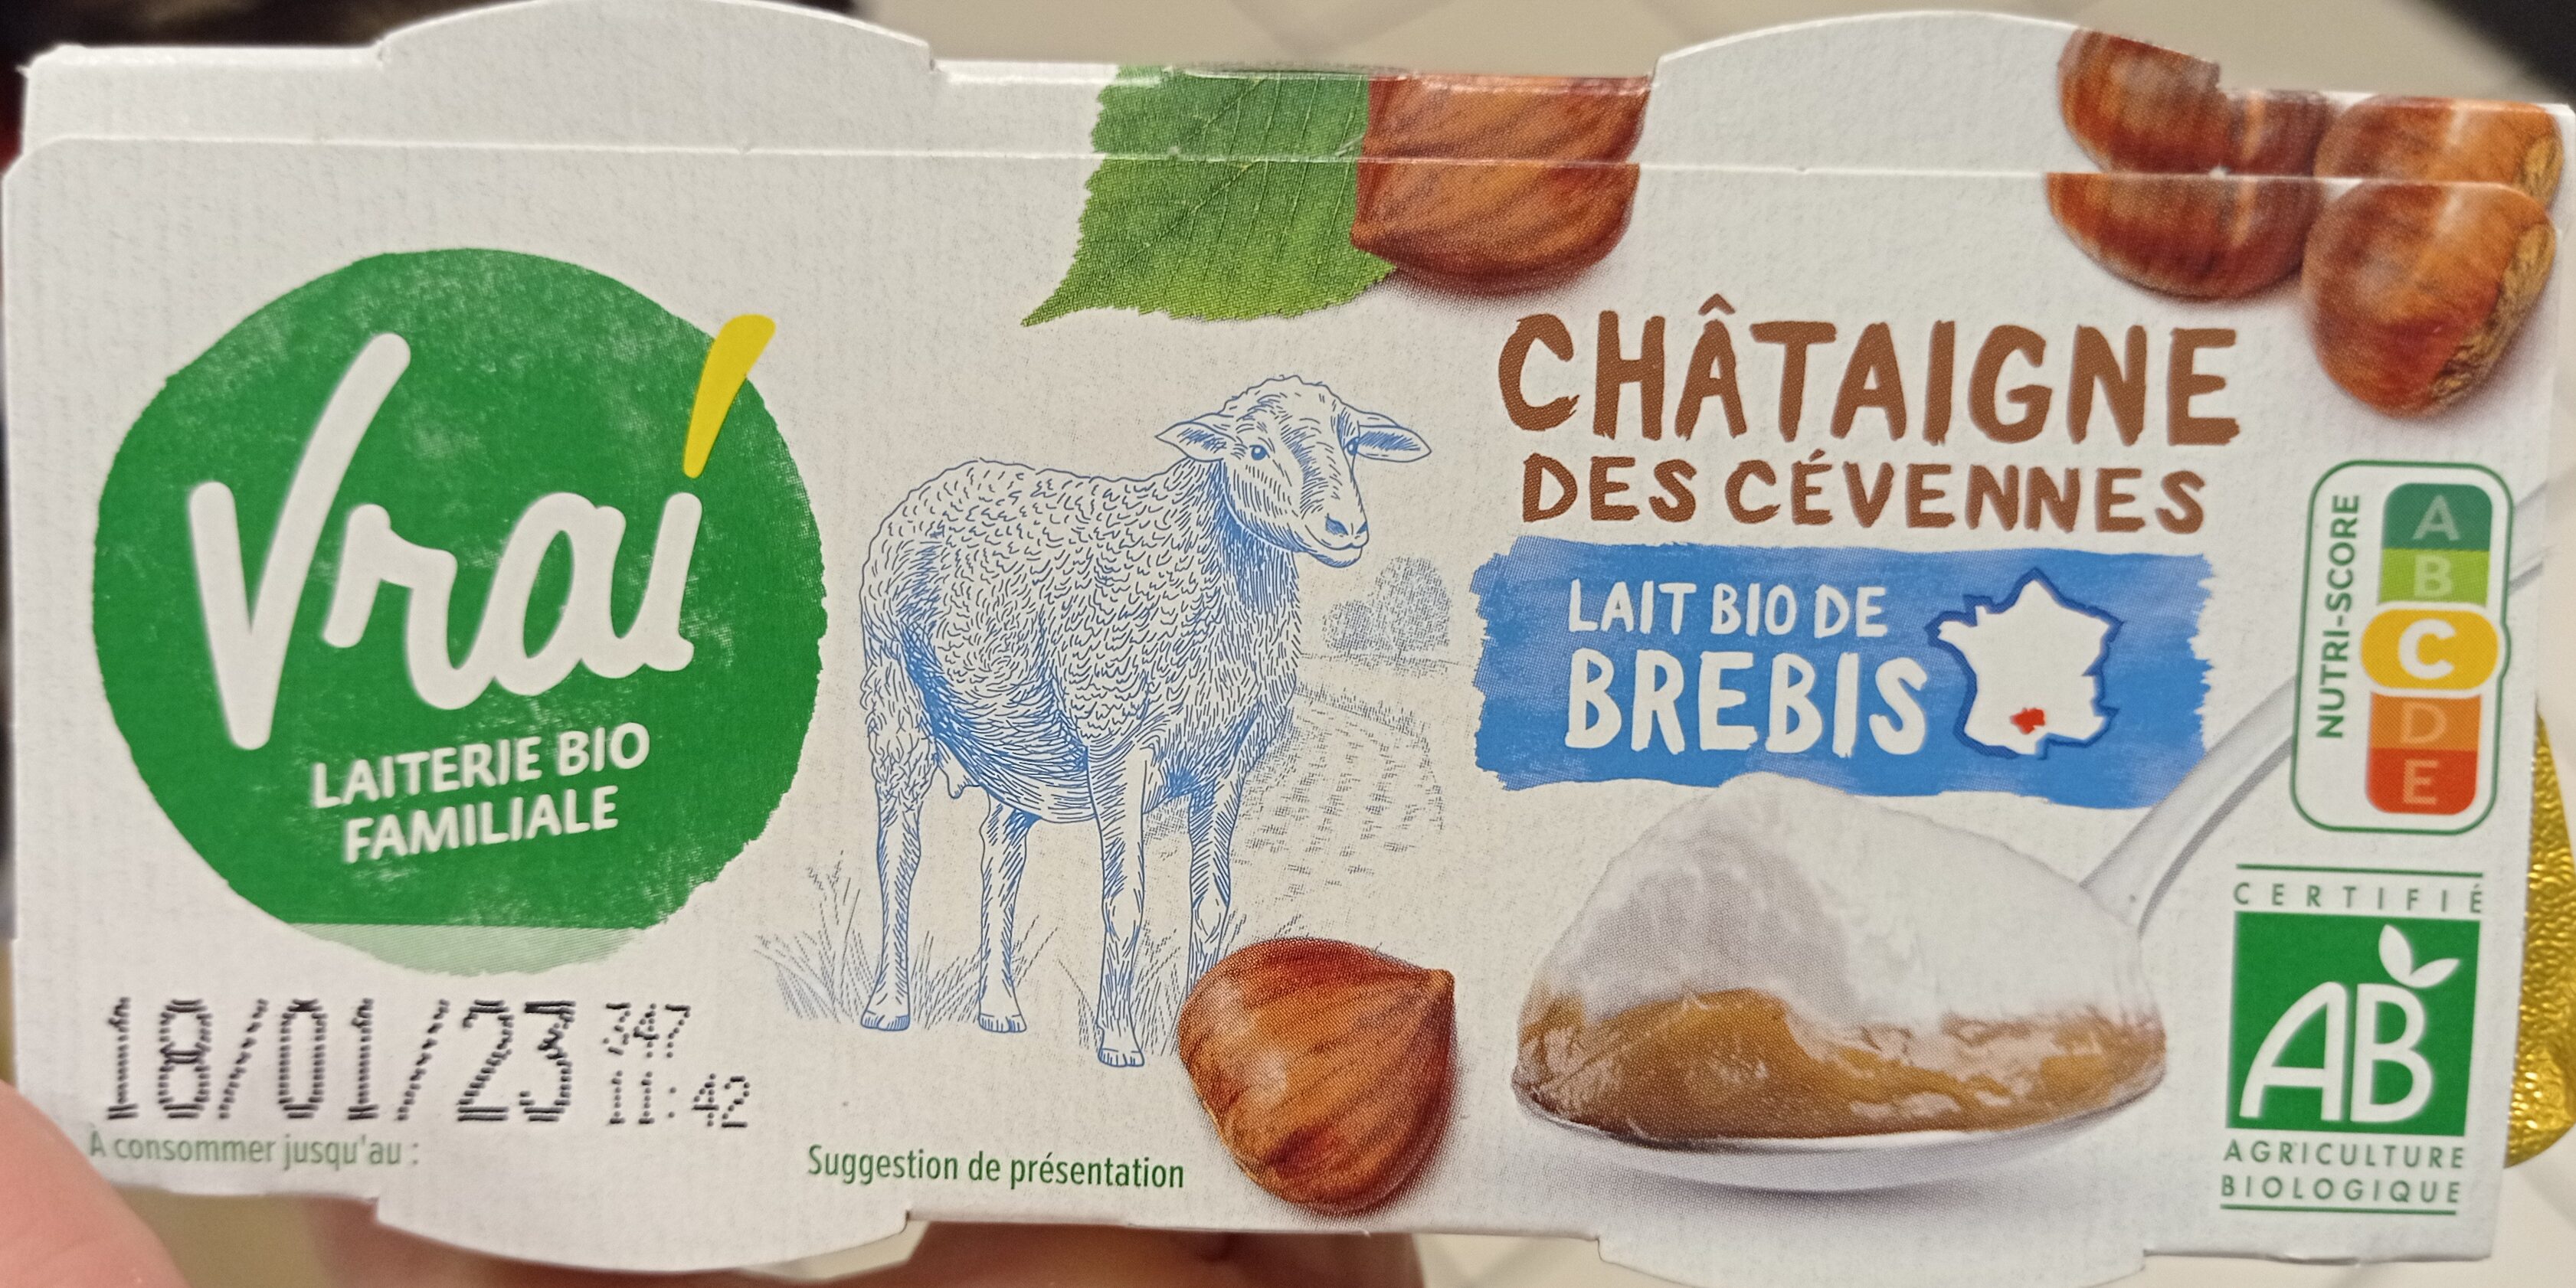 Châtaigne des Cévennes lait bio de brebis - Produkt - fr